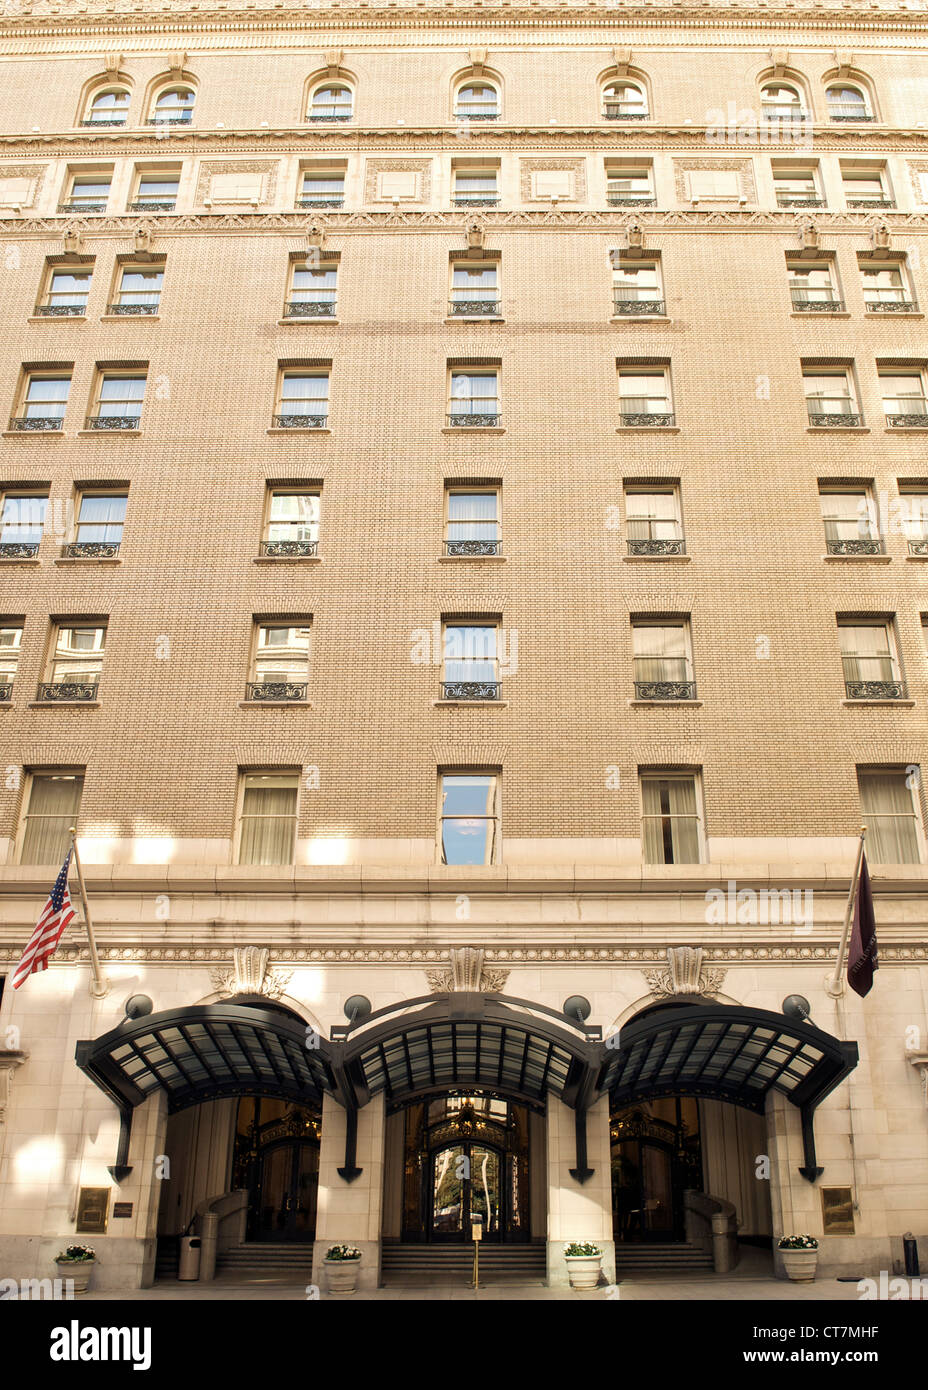 Der Eingang und die Fassade des Hotel Palace in San Francisco, Kalifornien, USA. Stockfoto